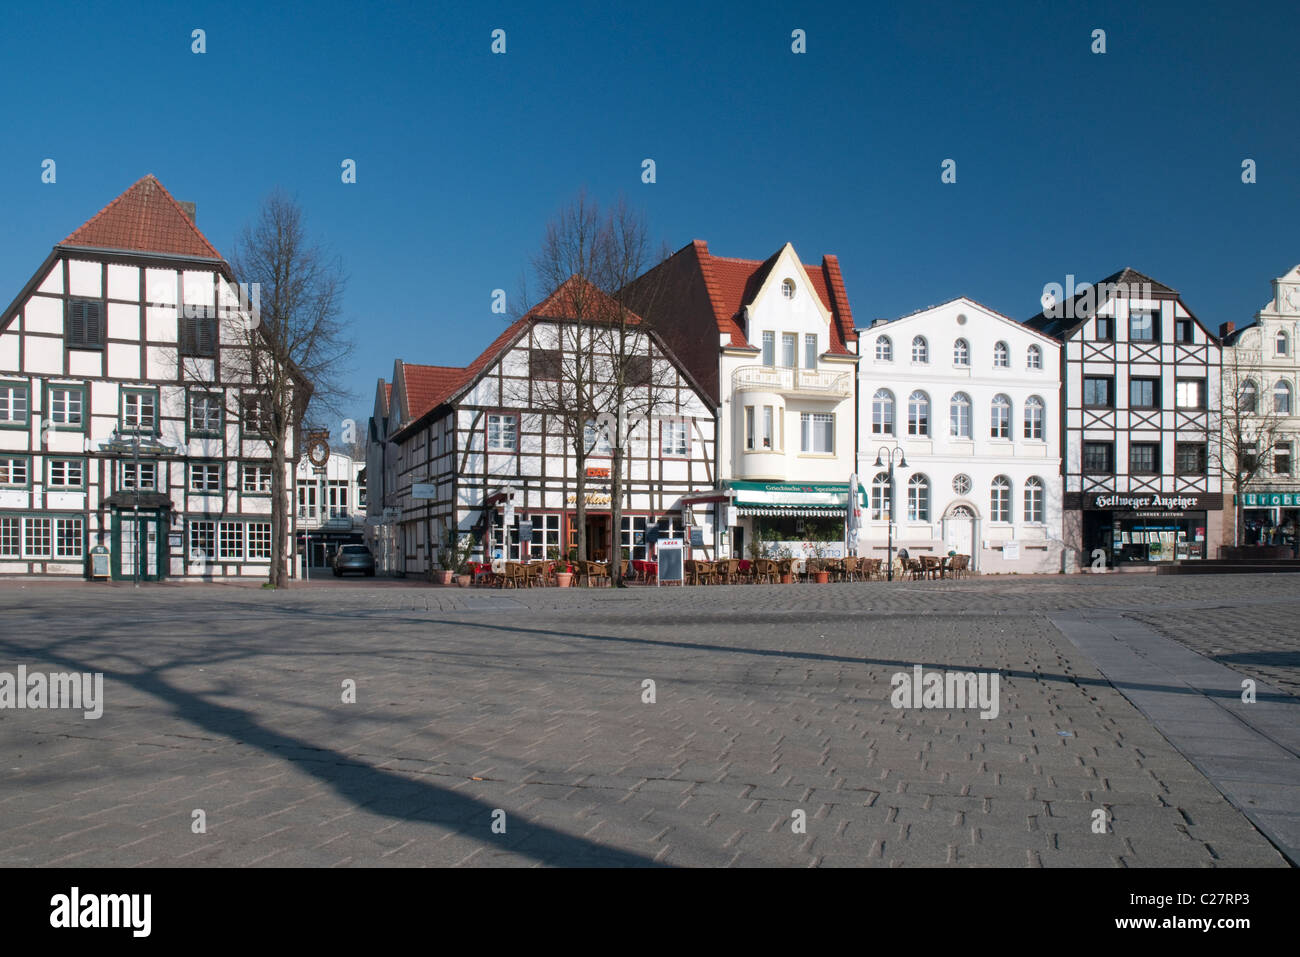 Marktplatz der Stadt Kamen mit alten Fachwerkhäusern Foto Stock